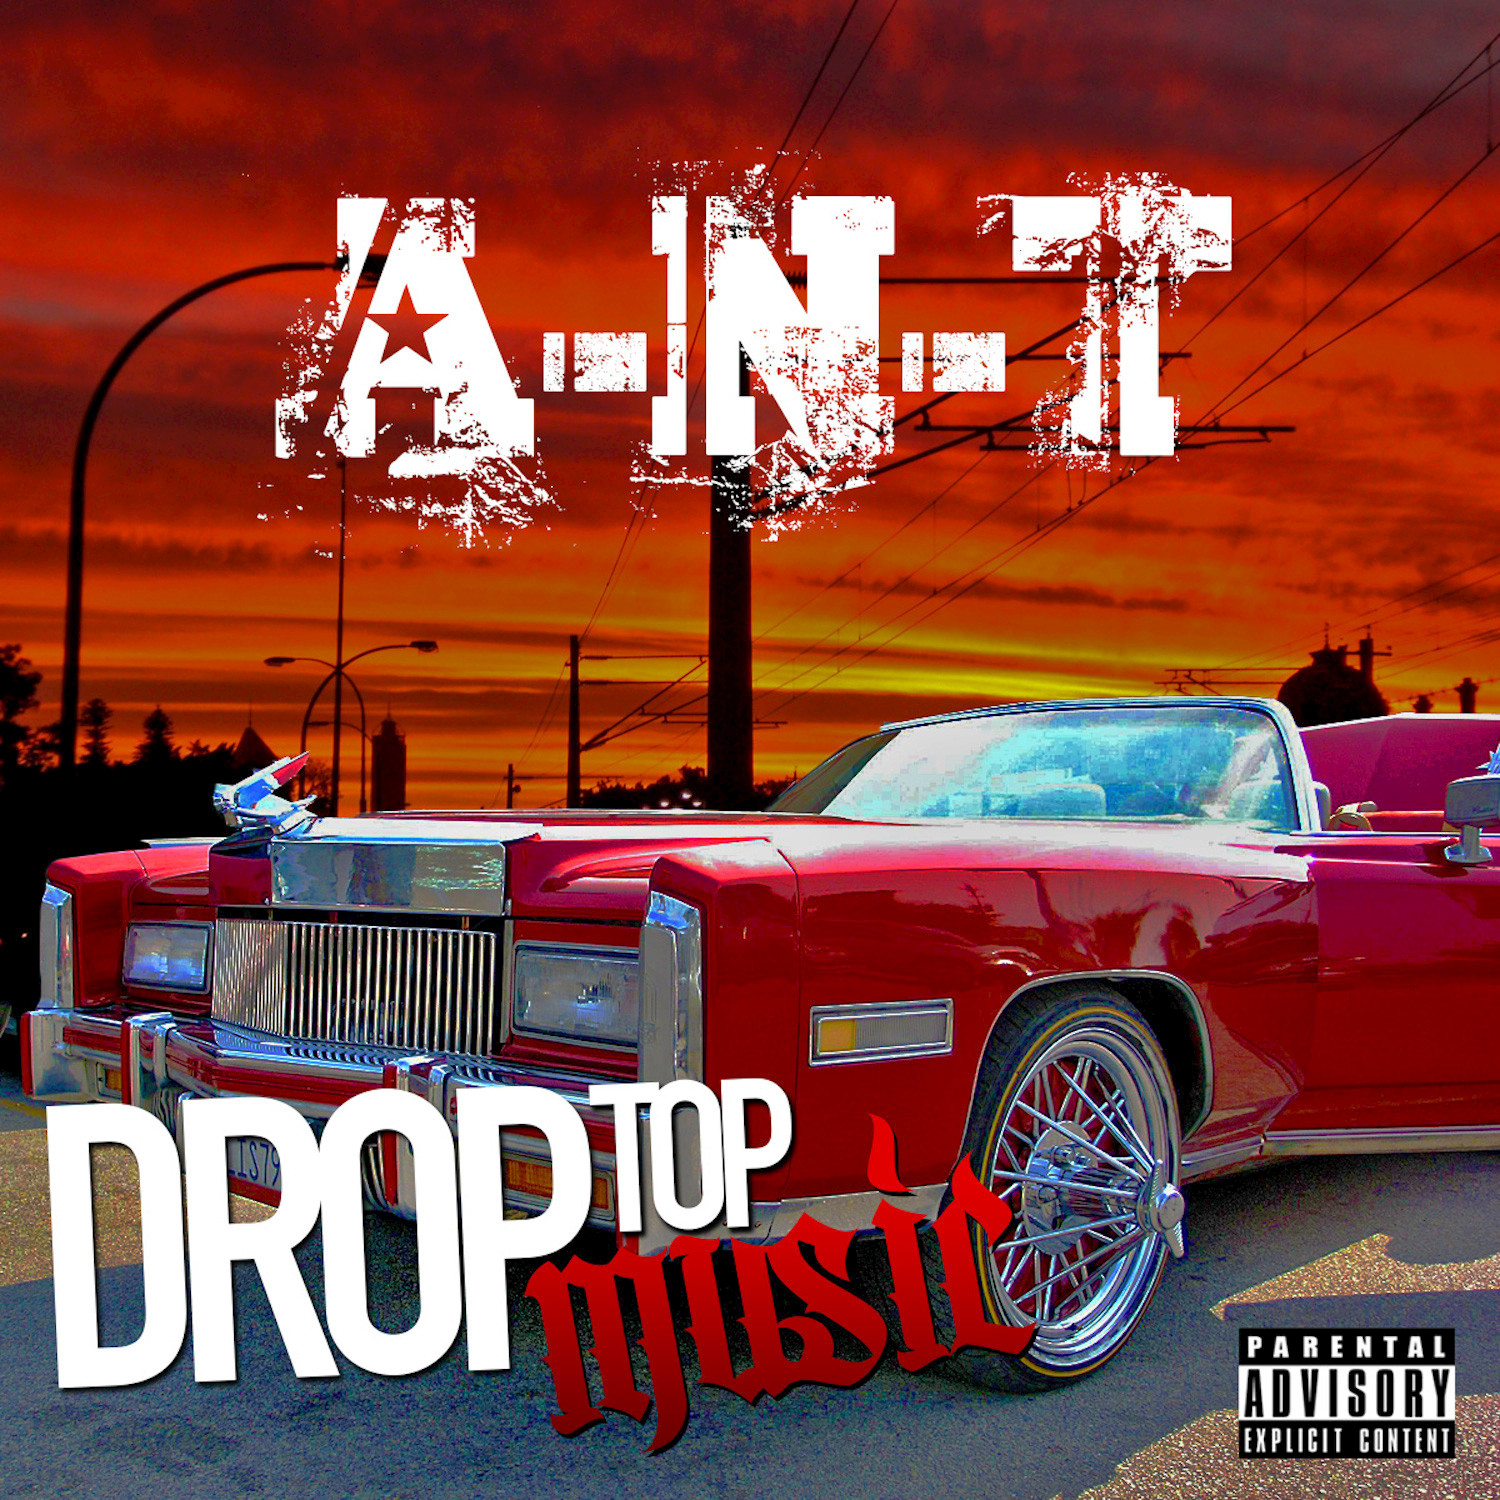 Drop Top Music